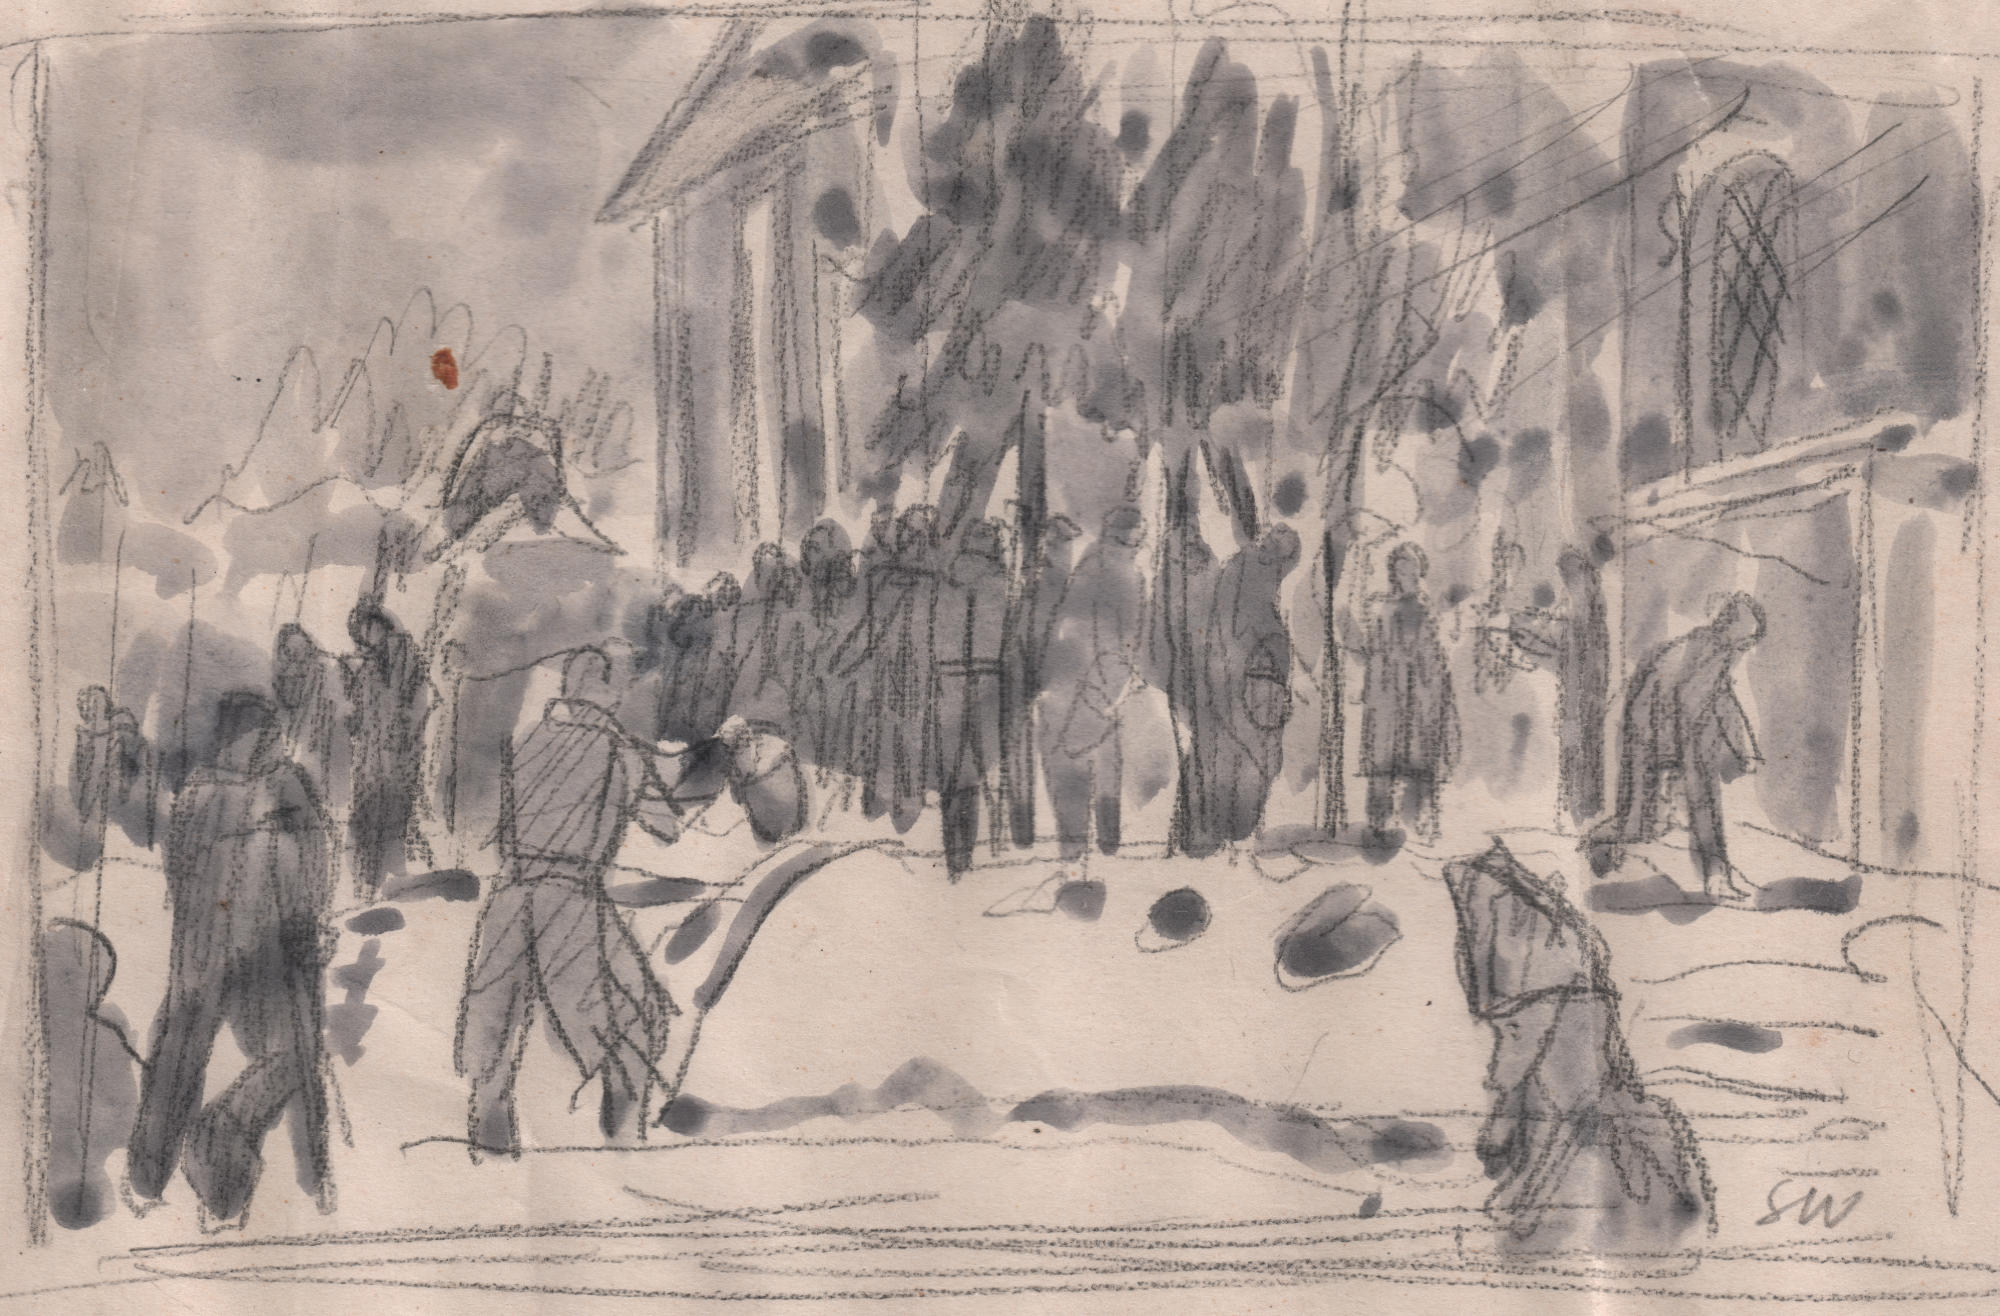 Praca przedstawiająca ludzi czekających w kolejce po wodę, Stanisław Westwalewicz, rys. ołówkiem, lawowany, obóz w Kozielsku, 1940